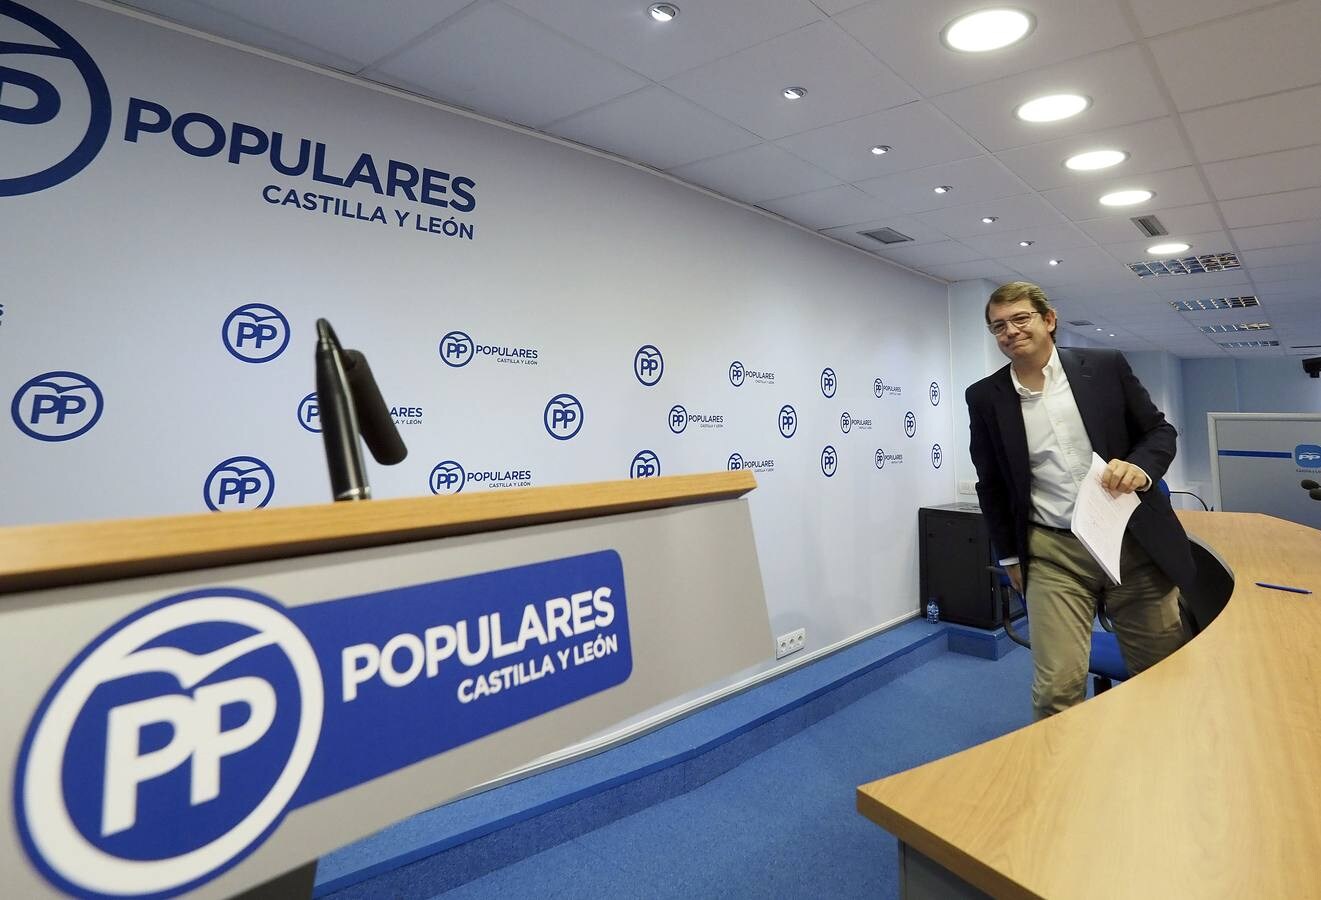 El candidato del PP a la Presidencia de la Junta, Alfonso Fernández Mañueco, anuncia acciones penales contra quien realice imputaciones falsas sin pruebas en el proceso de primarias de marzo de 2017 en las que resultó vencedor.